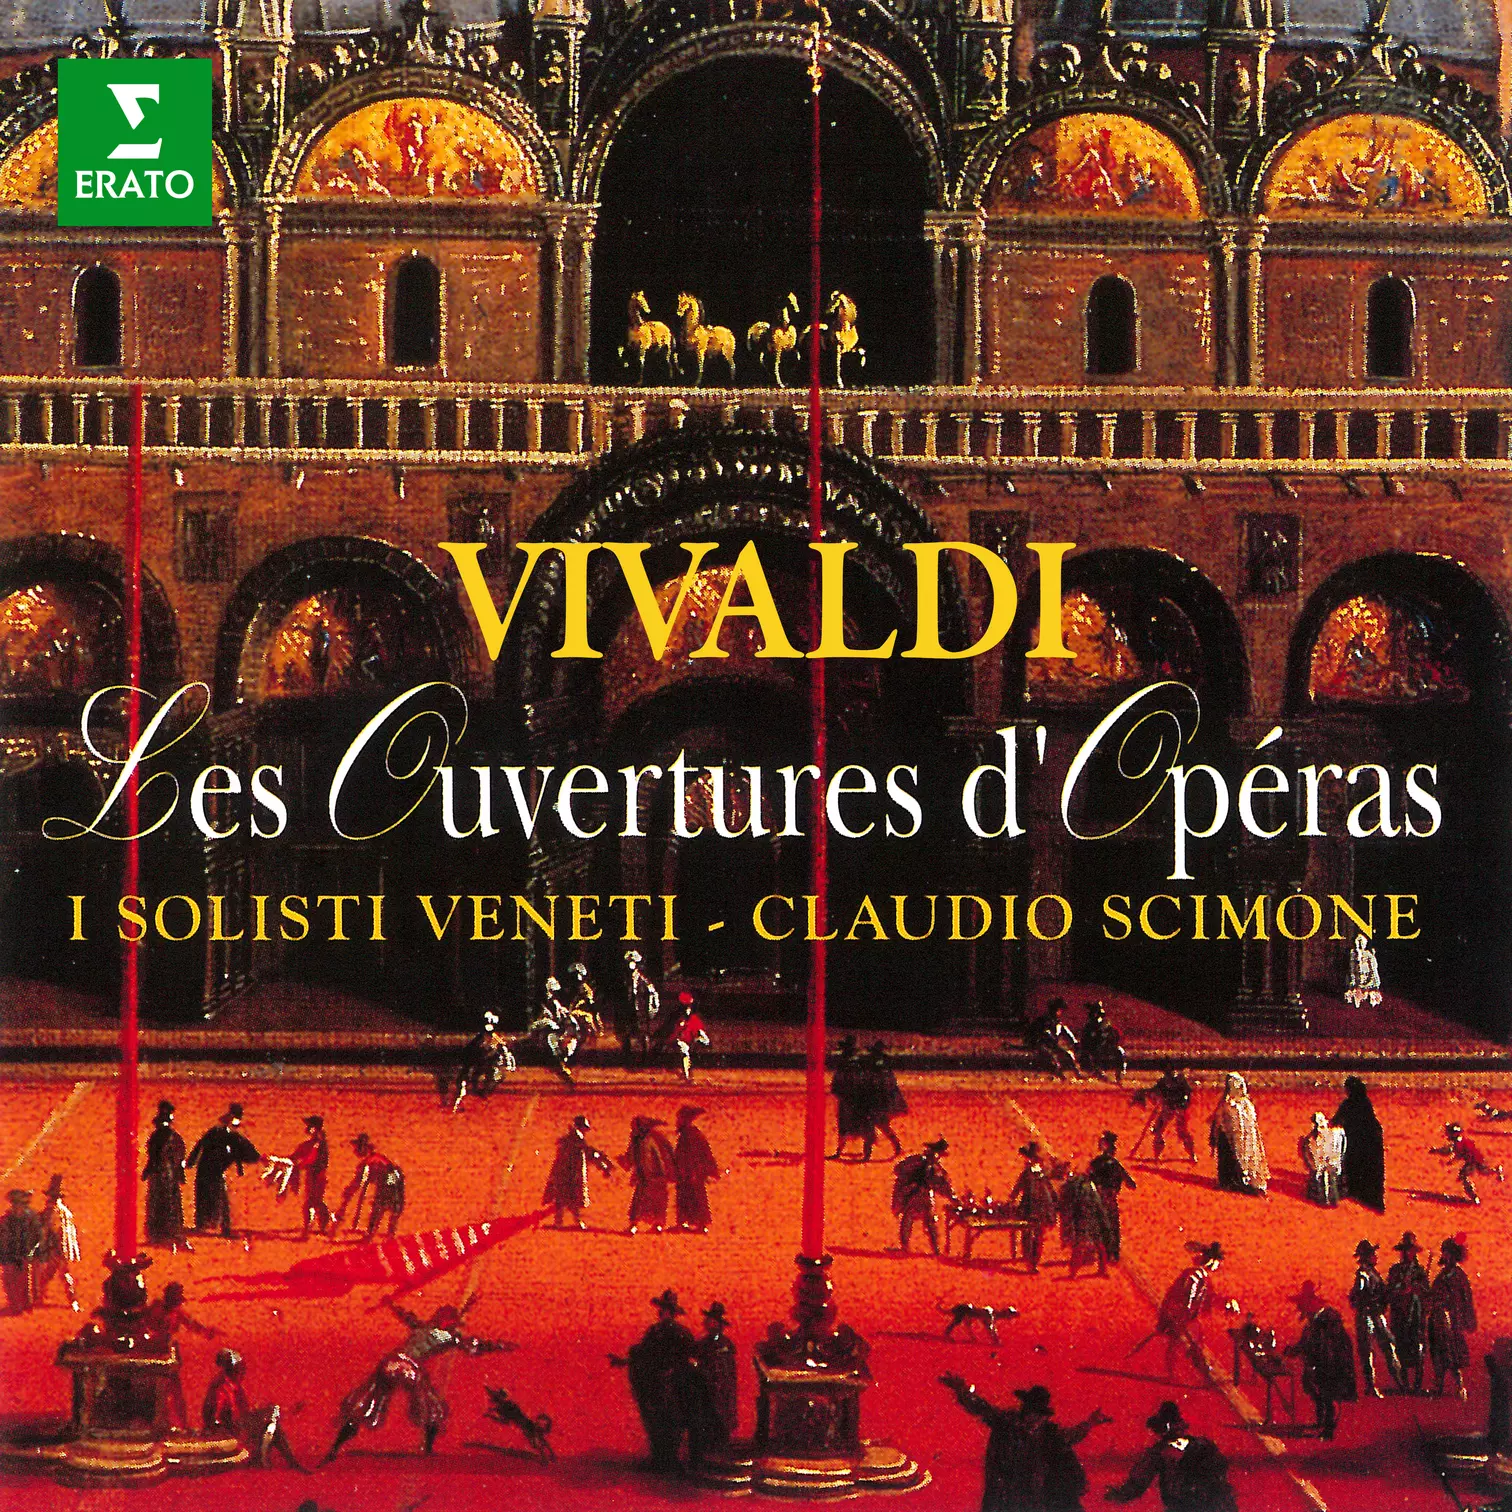 Vivaldi: Les ouvertures d’opéras